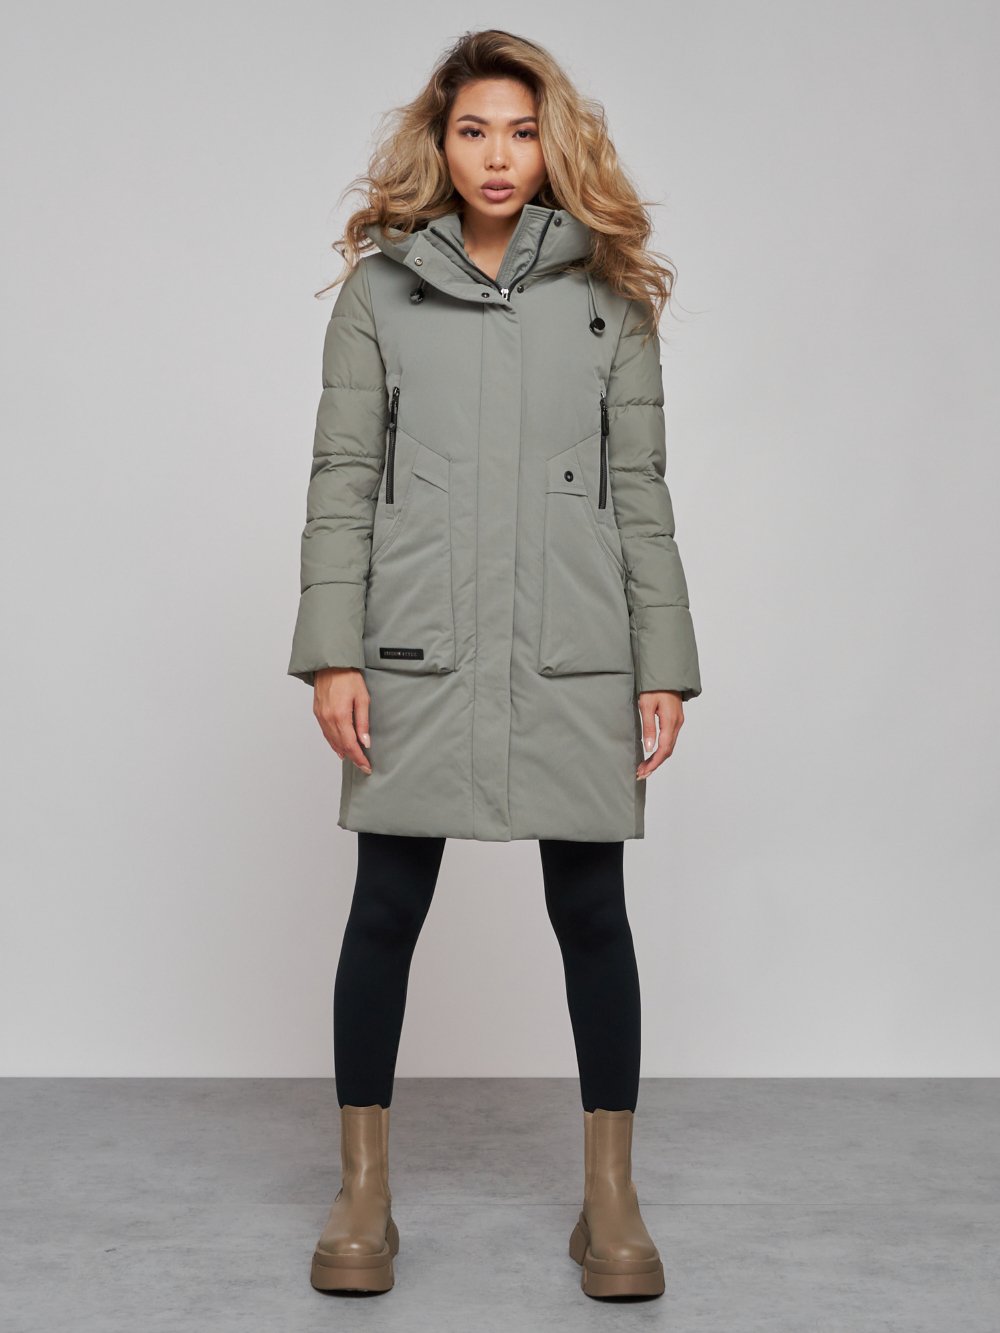 Купить оптом Зимняя женская куртка молодежная с капюшоном цвета хаки 589006Kh в Екатеринбурге